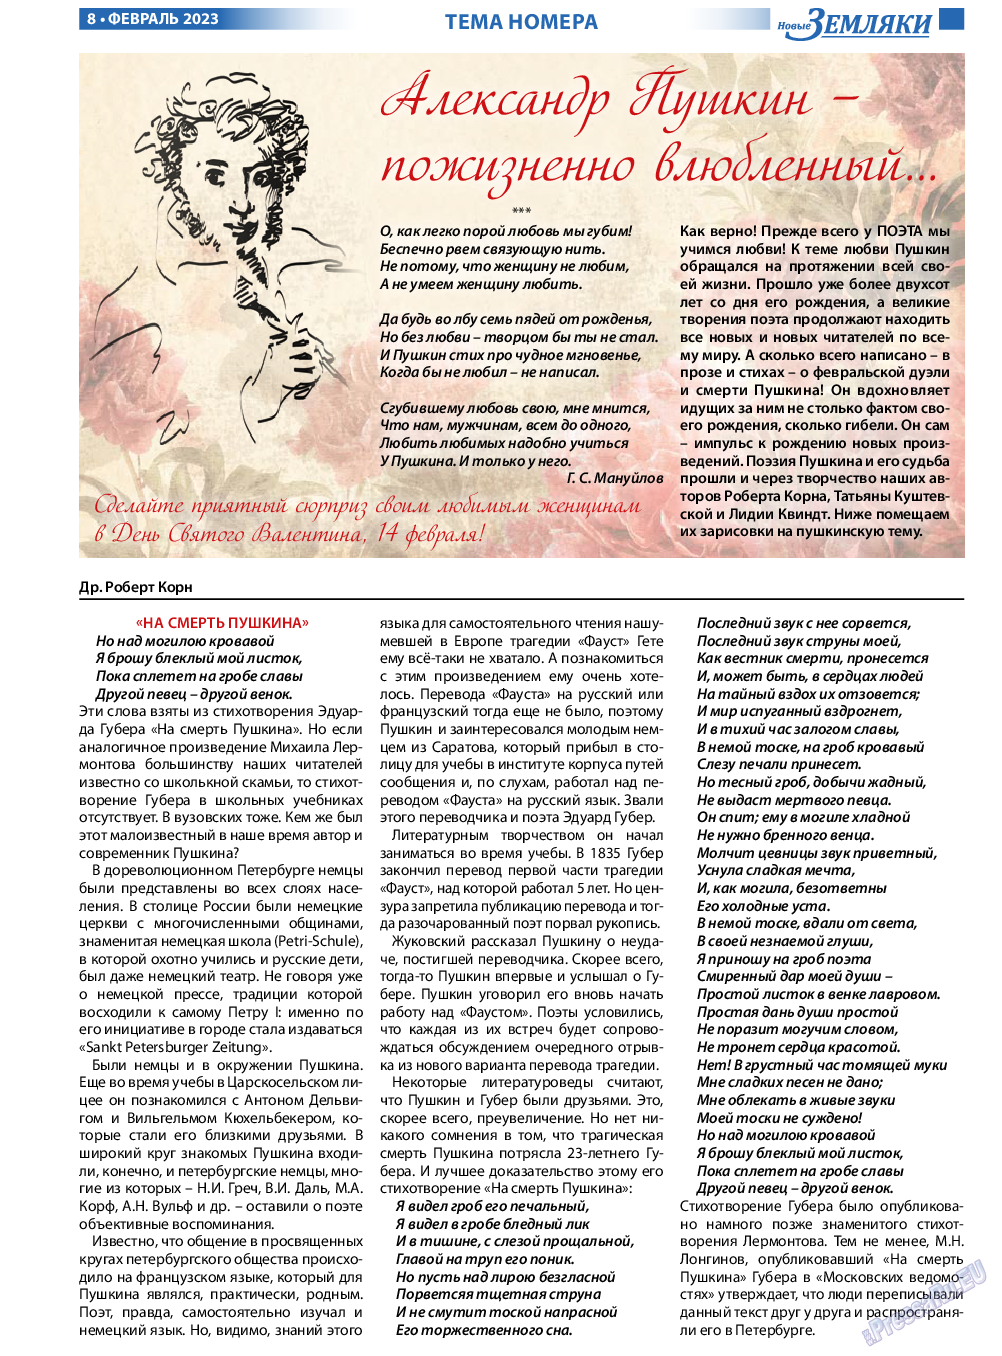 Новые Земляки, газета. 2023 №2 стр.8